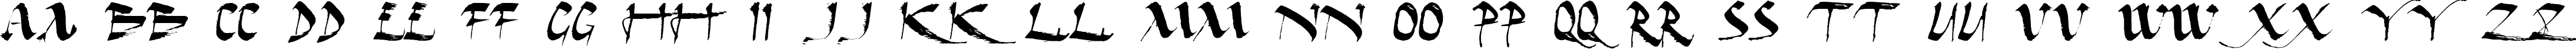 Пример написания английского алфавита шрифтом Dark Horse Expanded